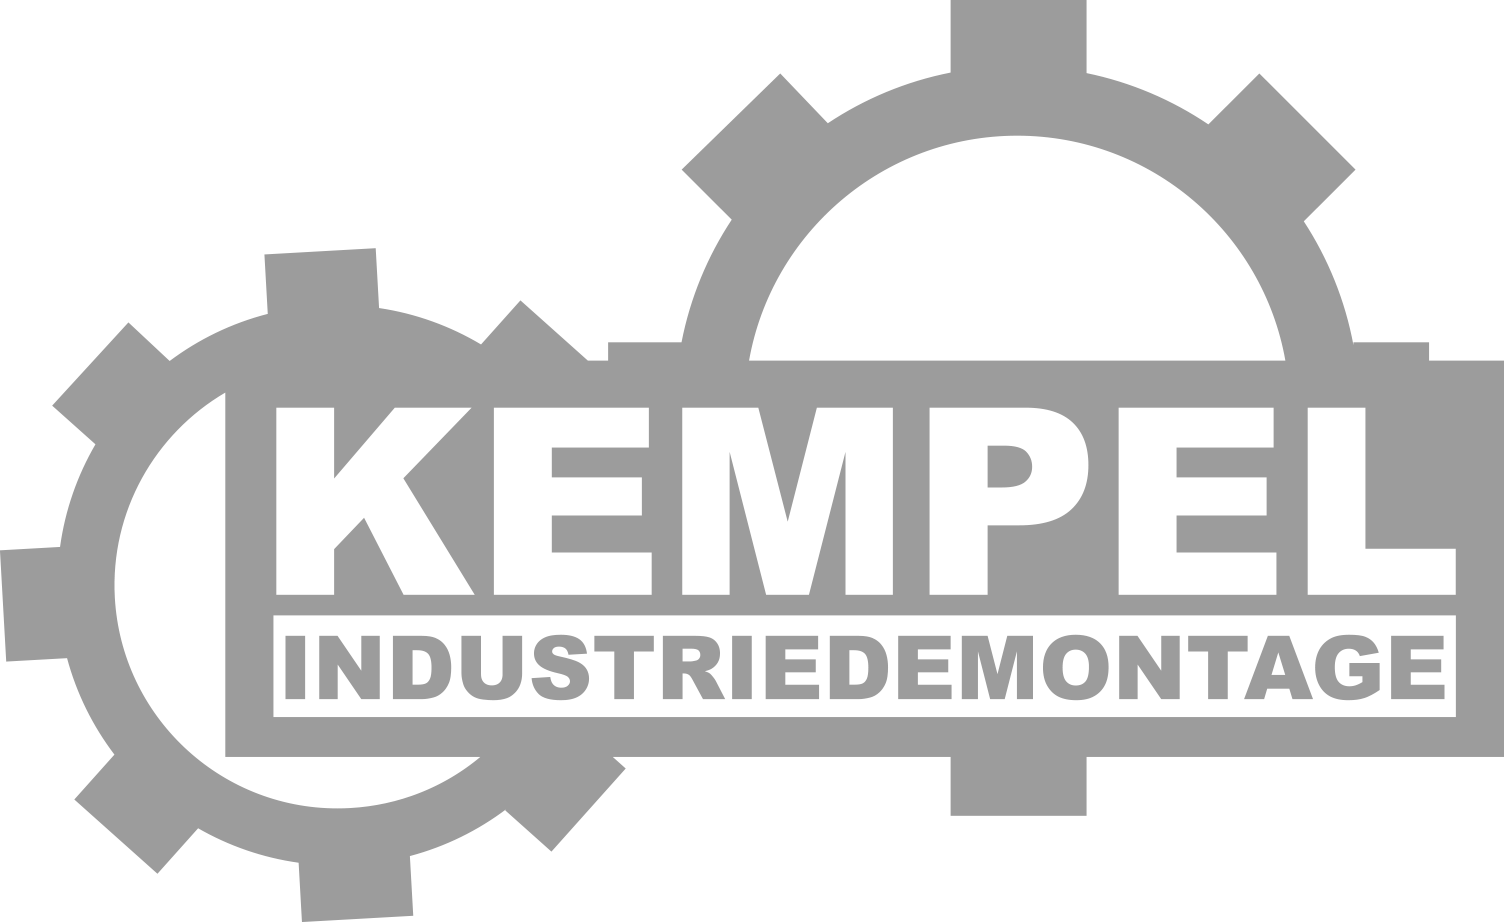 Kempel